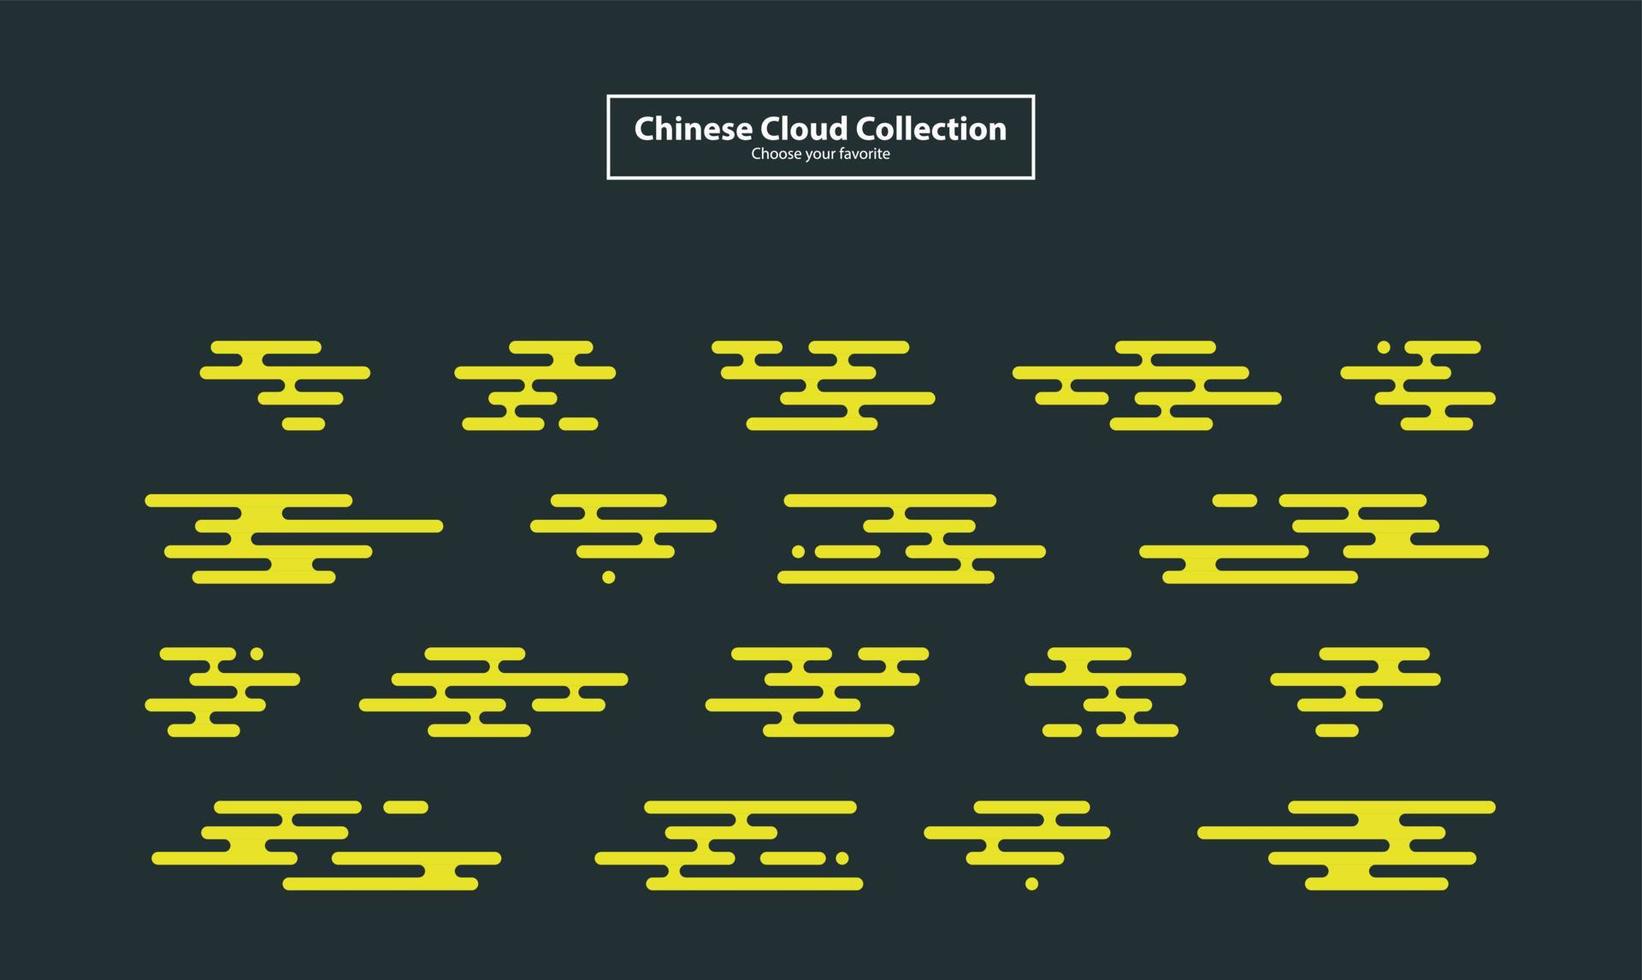 moderno chino nube pegatinas etiquetas colorido elemento vector colección plano insignia conjunto clipart etiqueta